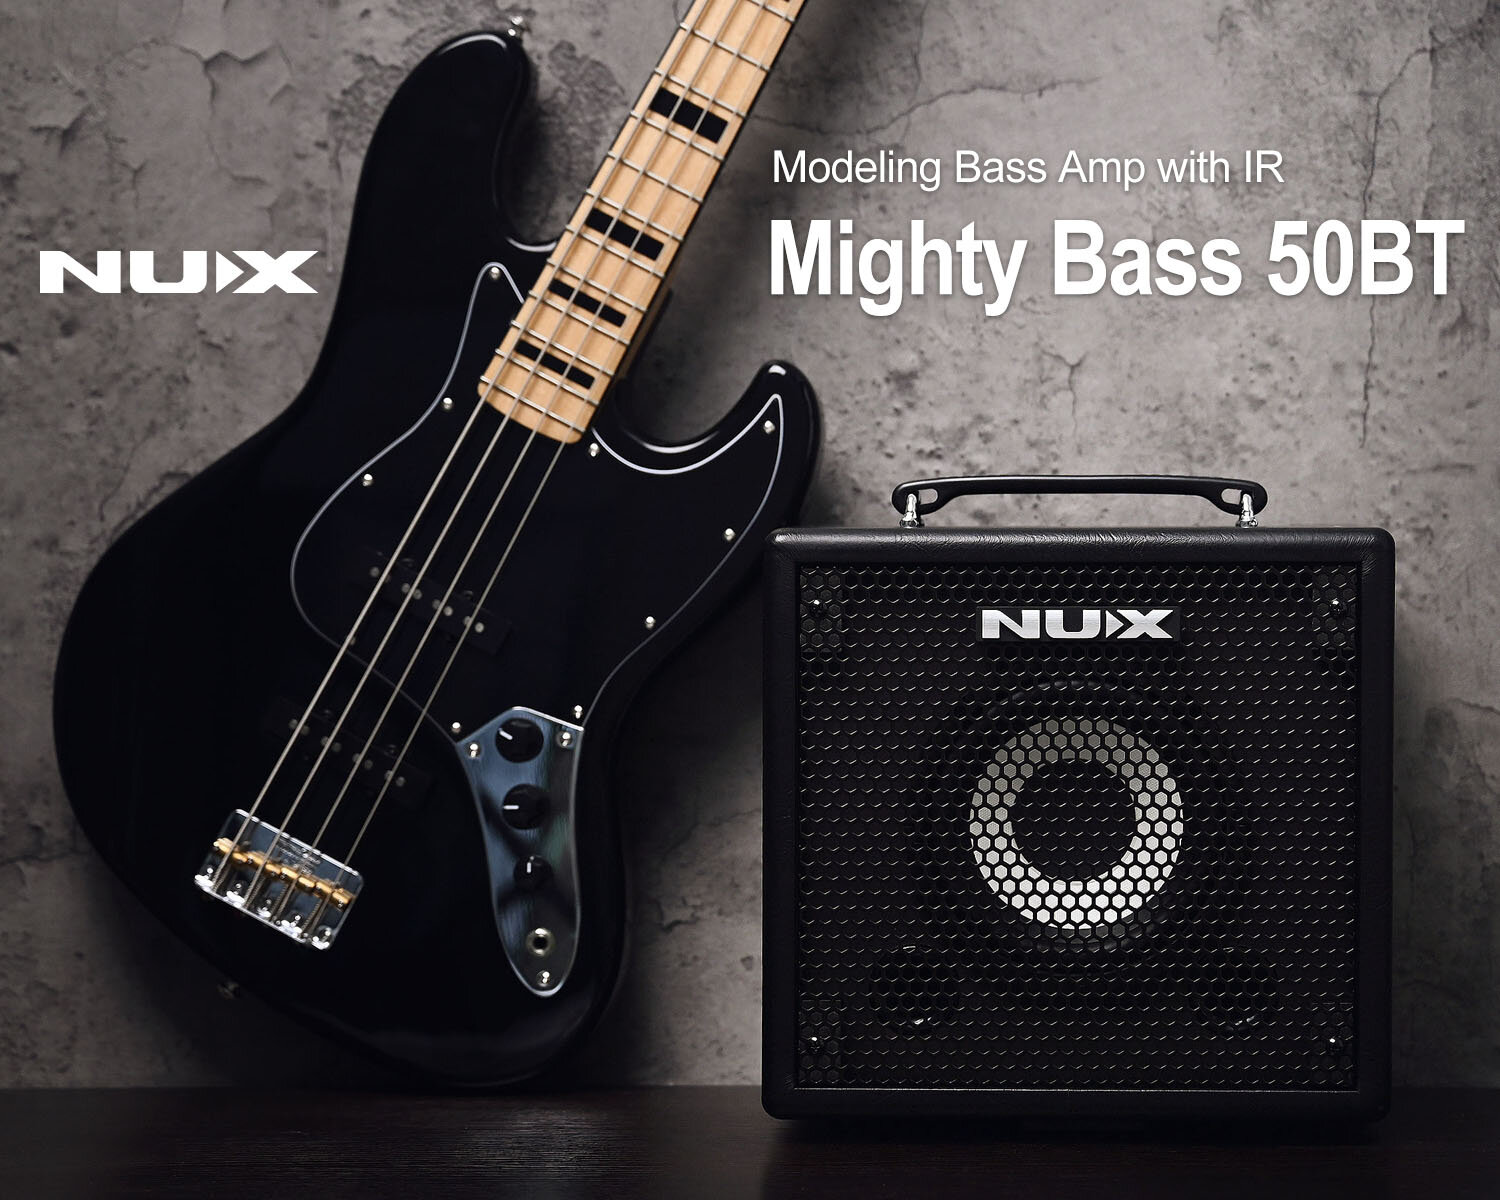 Mighty Bass 50BT